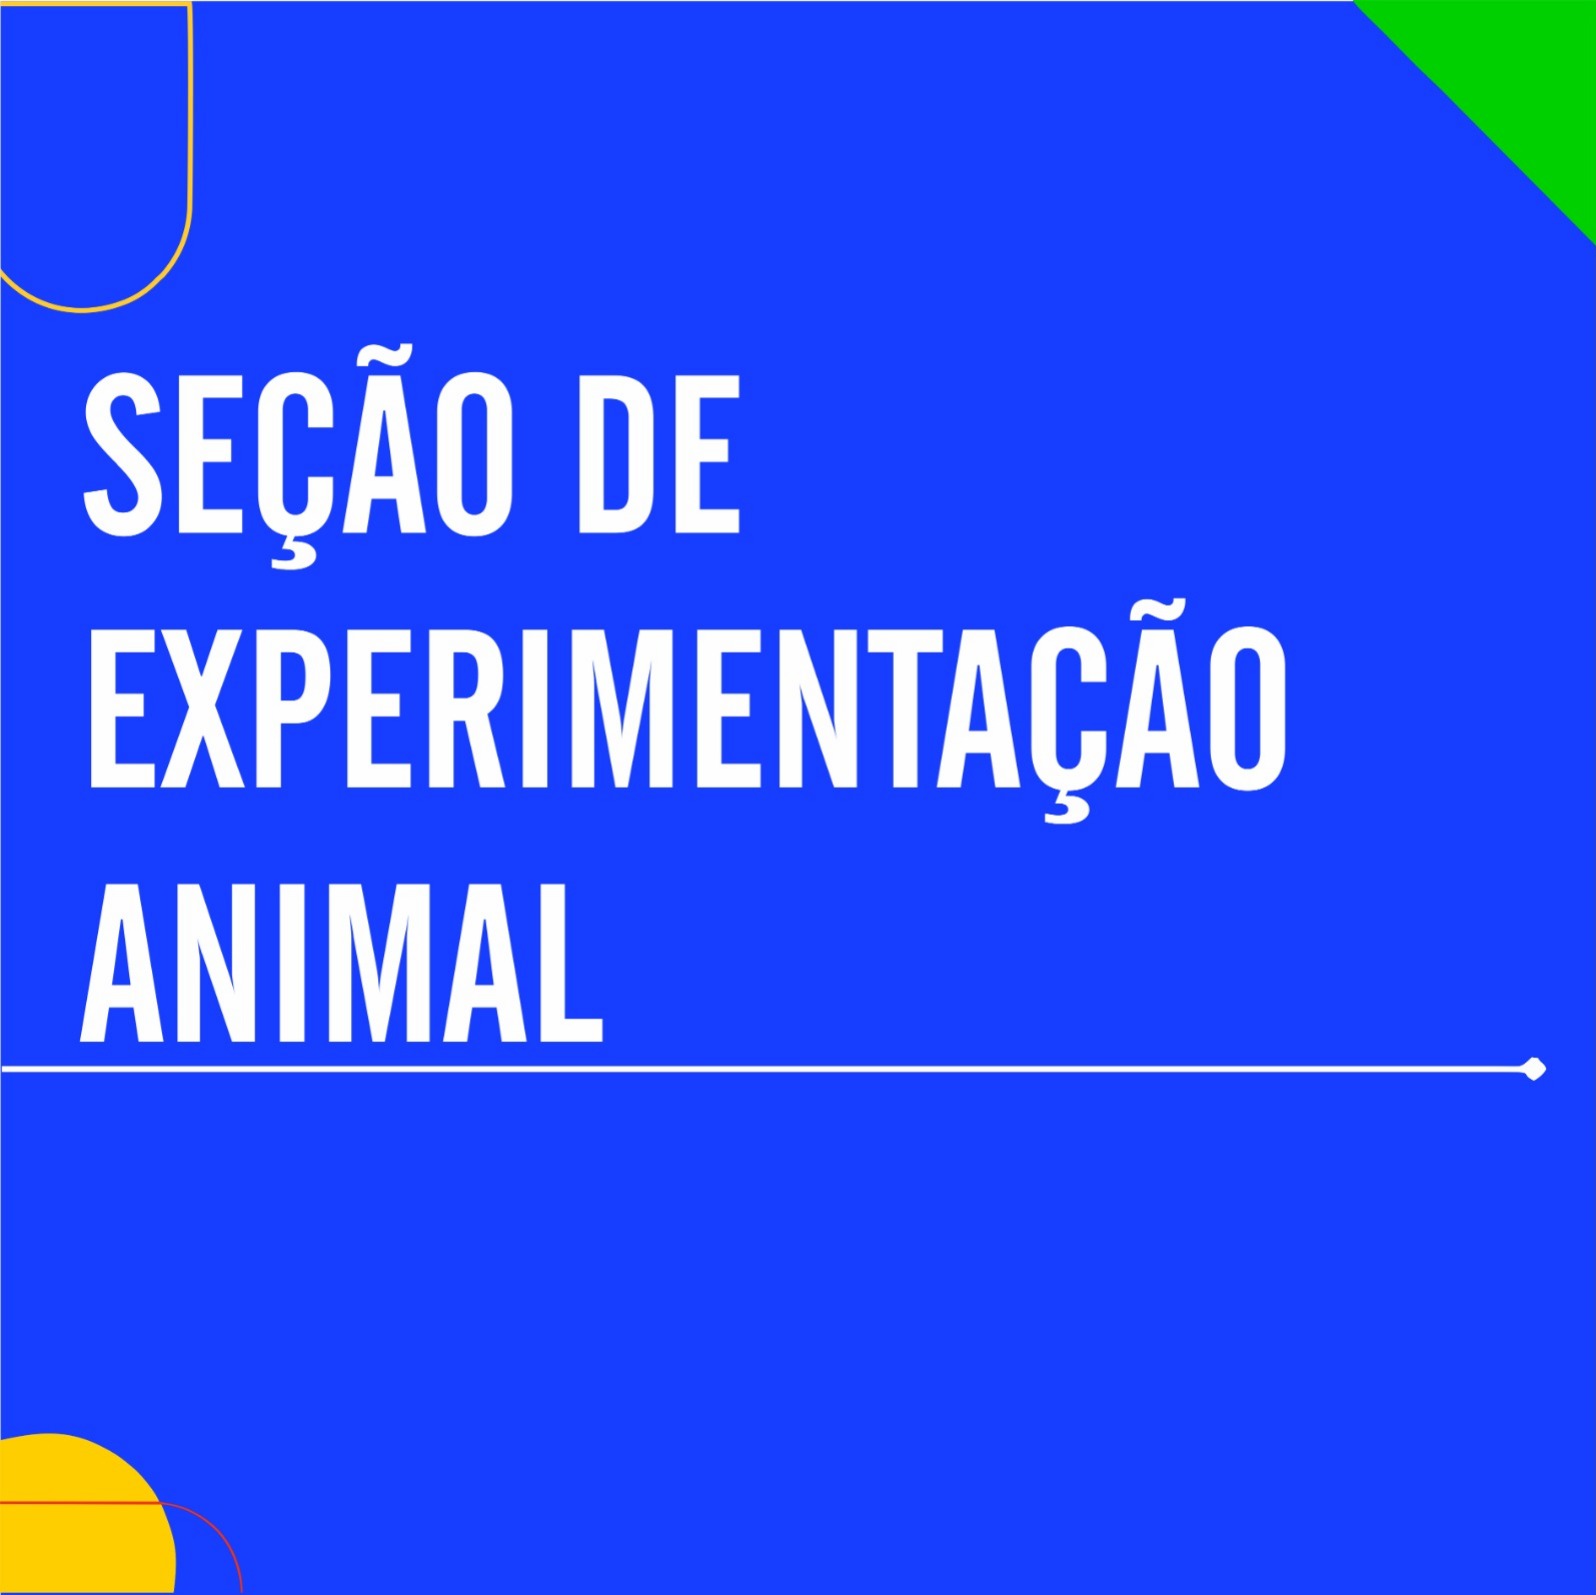 Seção de Experimentação Animal